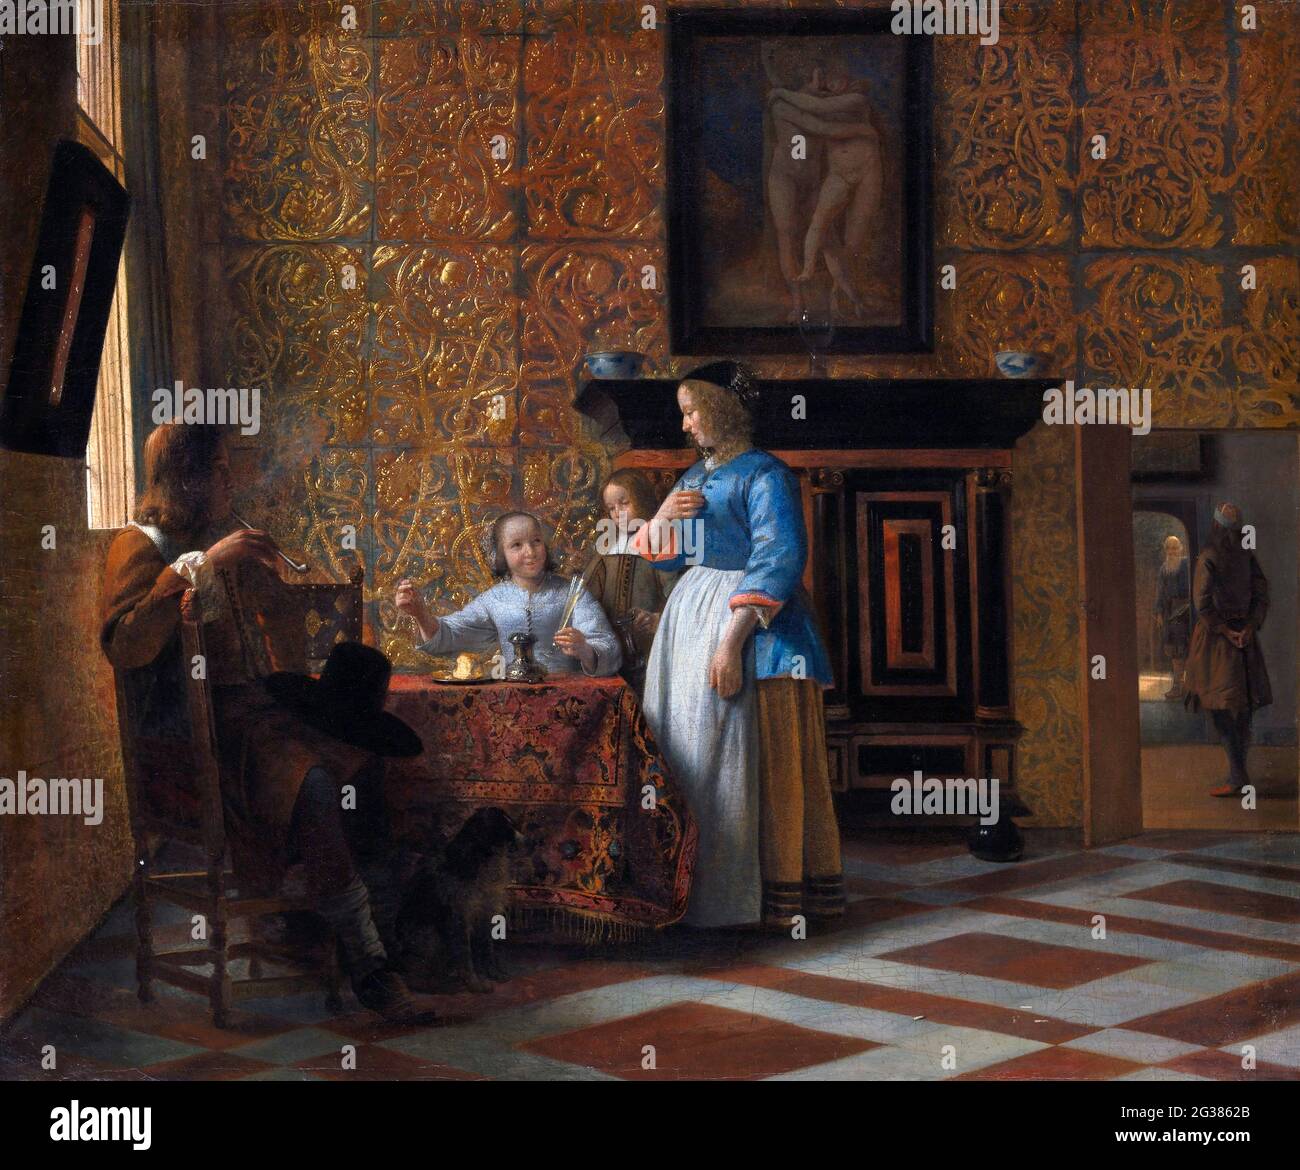 Pieter de Hooch. Tiempo libre en un ambiente elegante por el pintor holandés de la Edad de Oro, Pieter de Hooch (1629-1684), óleo sobre lienzo, c. 1663-65 Foto de stock